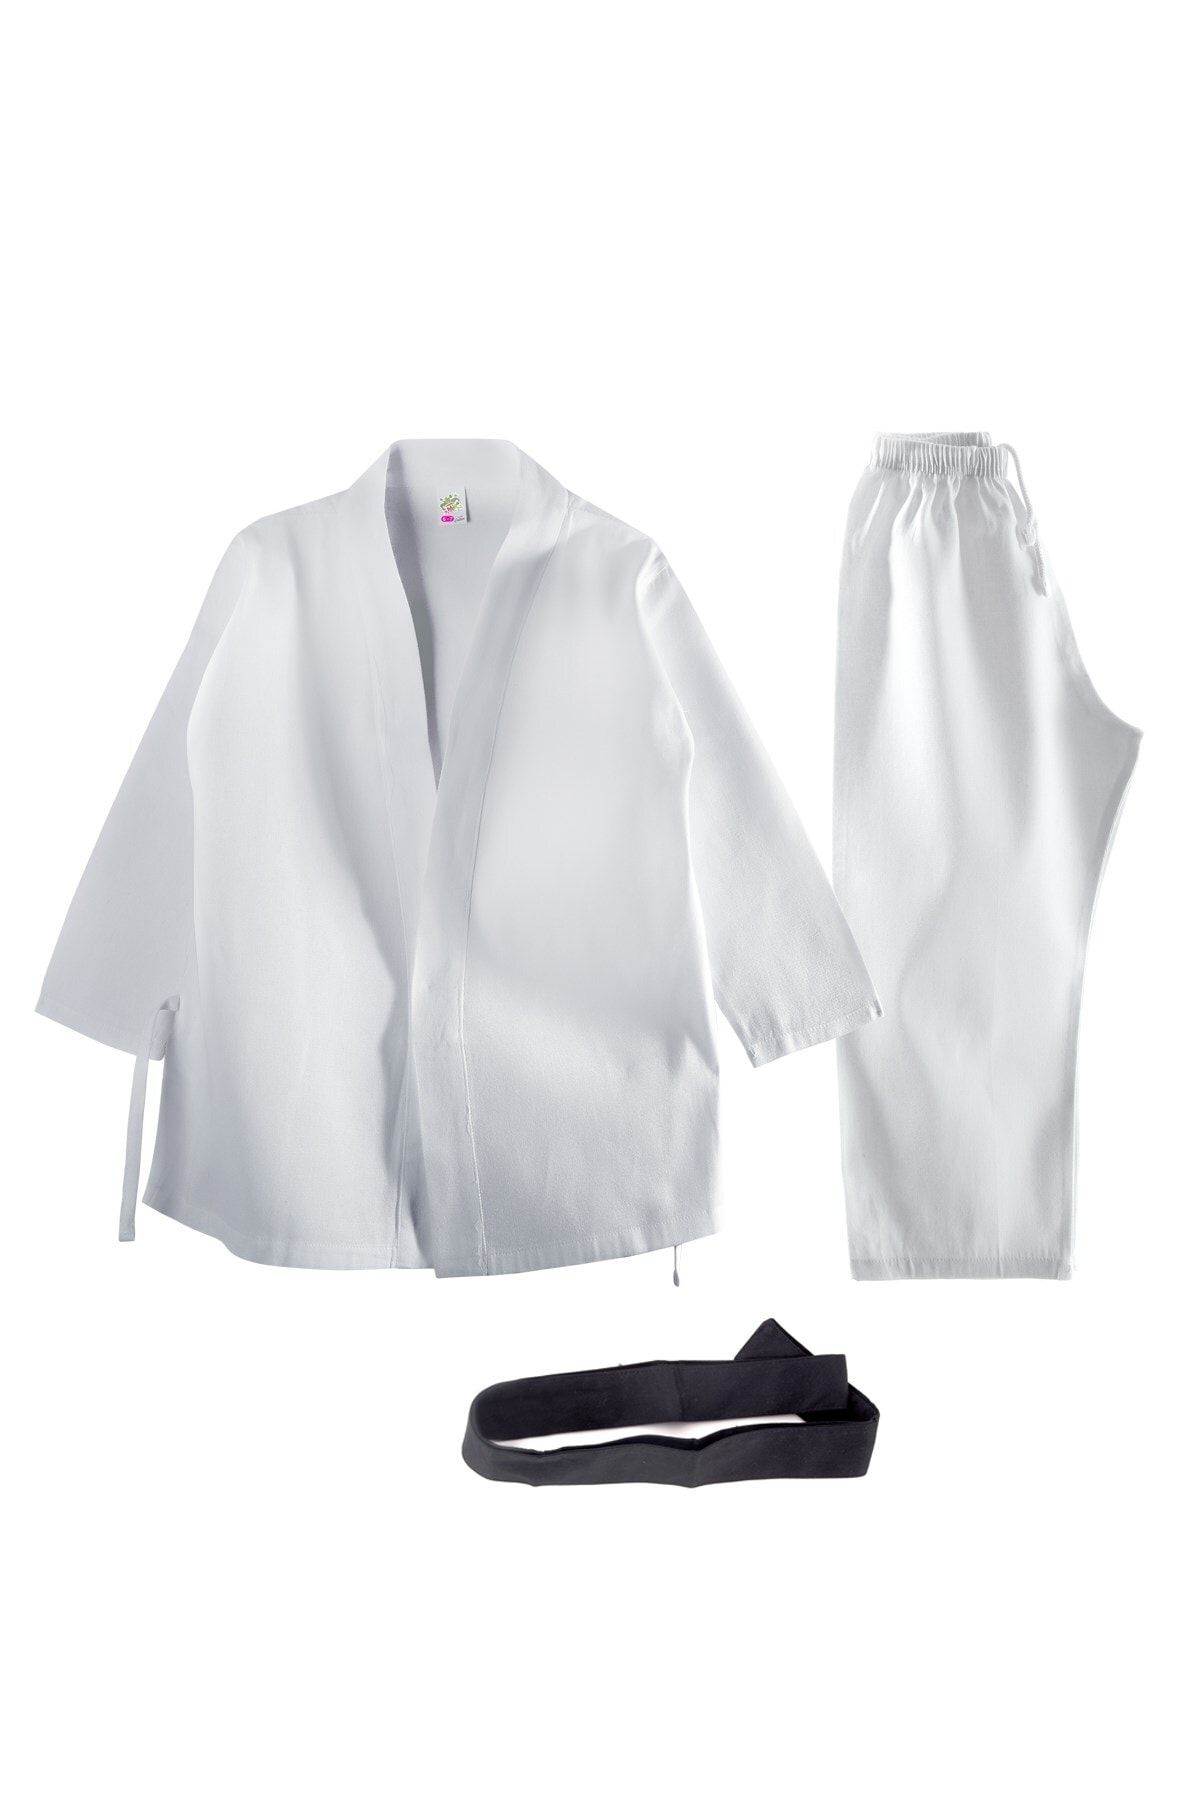 OULABİMİR Beyaz Karate Kostümü Çocuk Kıyafeti